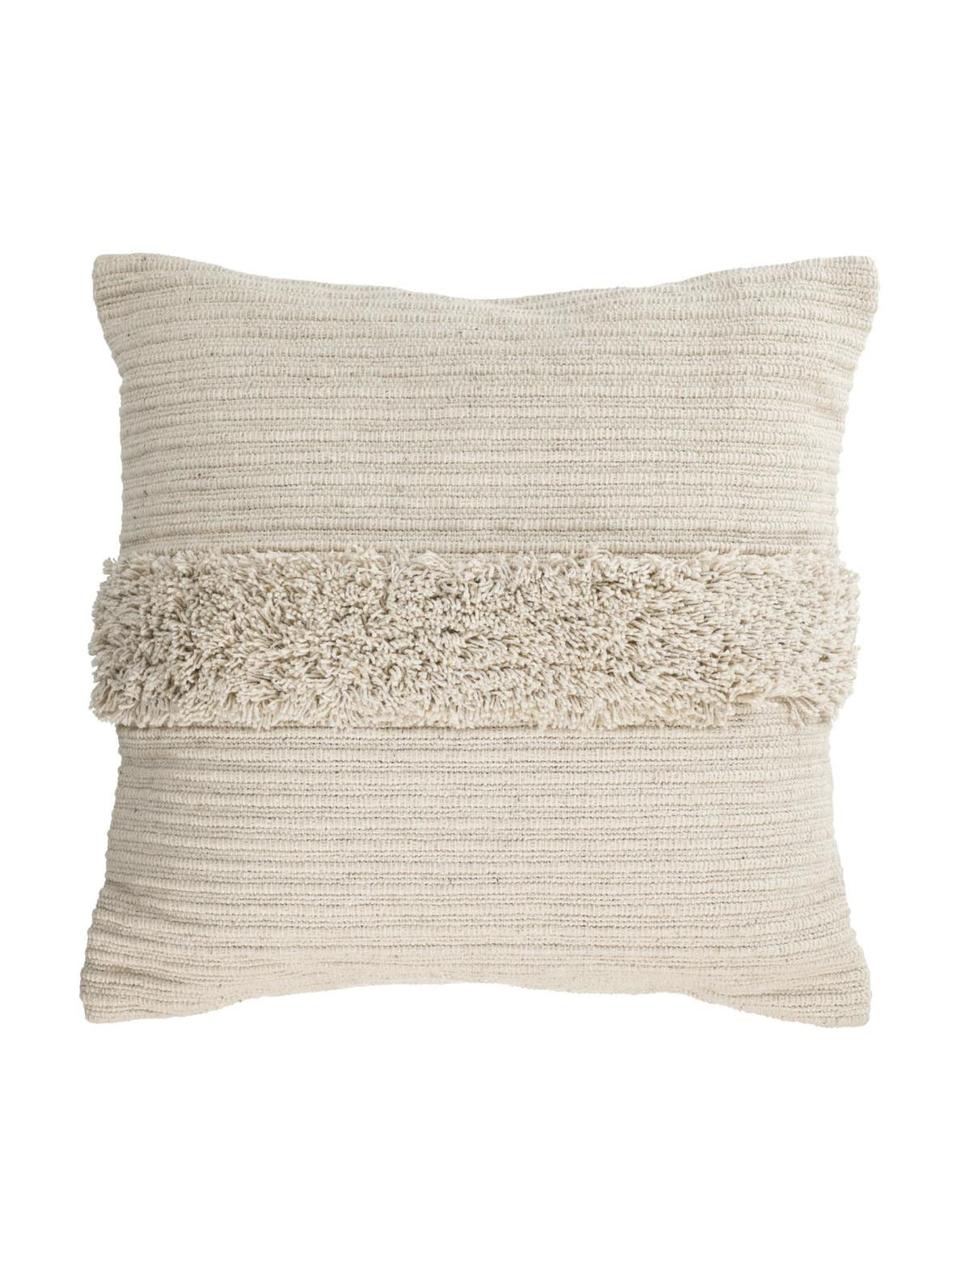 Poszewka na poduszkę w stylu boho Mariana, 100% bawełna, Beżowy, S 45 x D 45 cm